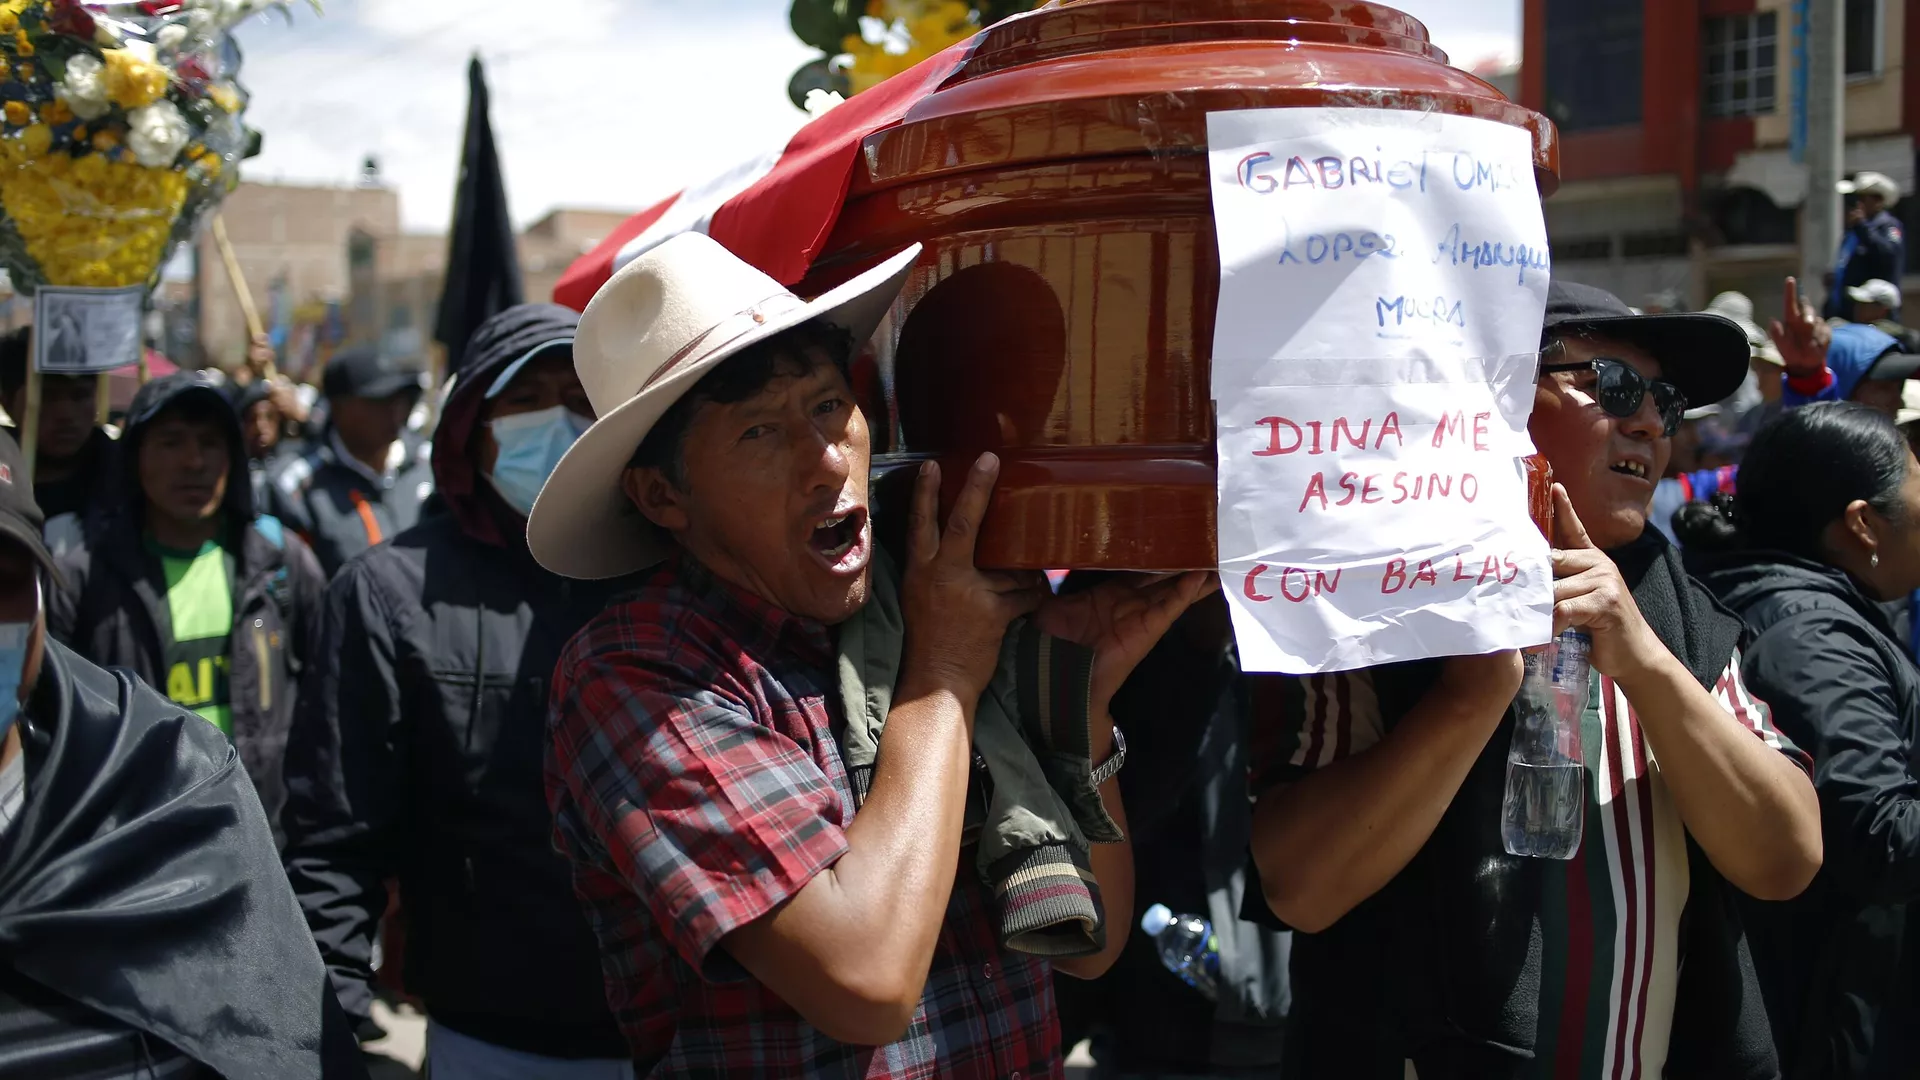 Los peruanos llevan un ataúd con el nombre del fallecido y un mensaje: Dina me asesinó con balas - Sputnik Mundo, 1920, 12.01.2023